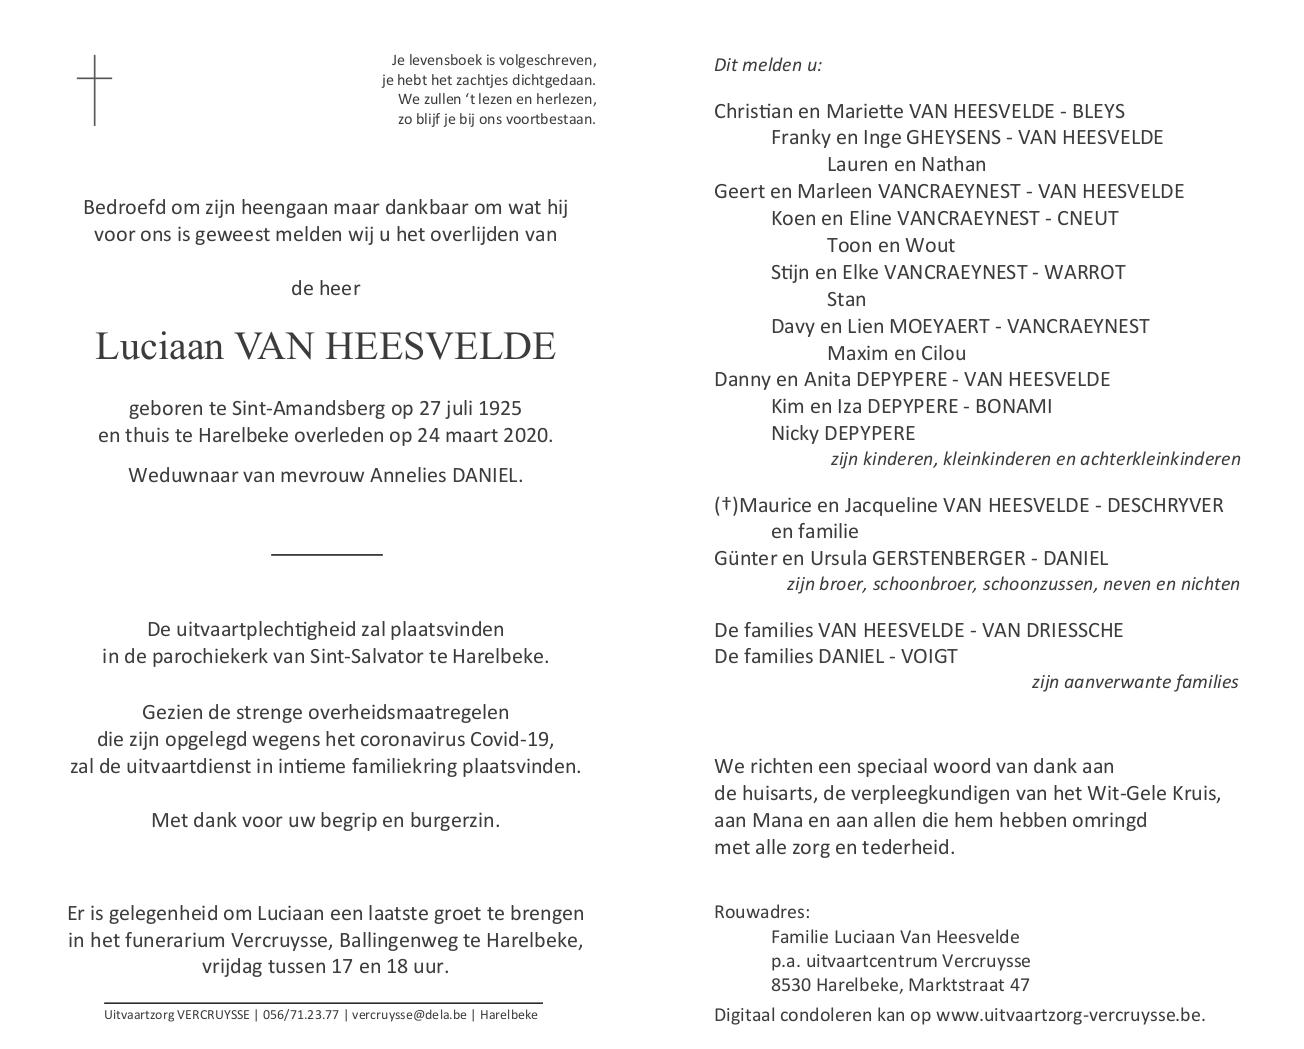 Luciaan Van Heesvelde 24/03/2020 | In gedachten